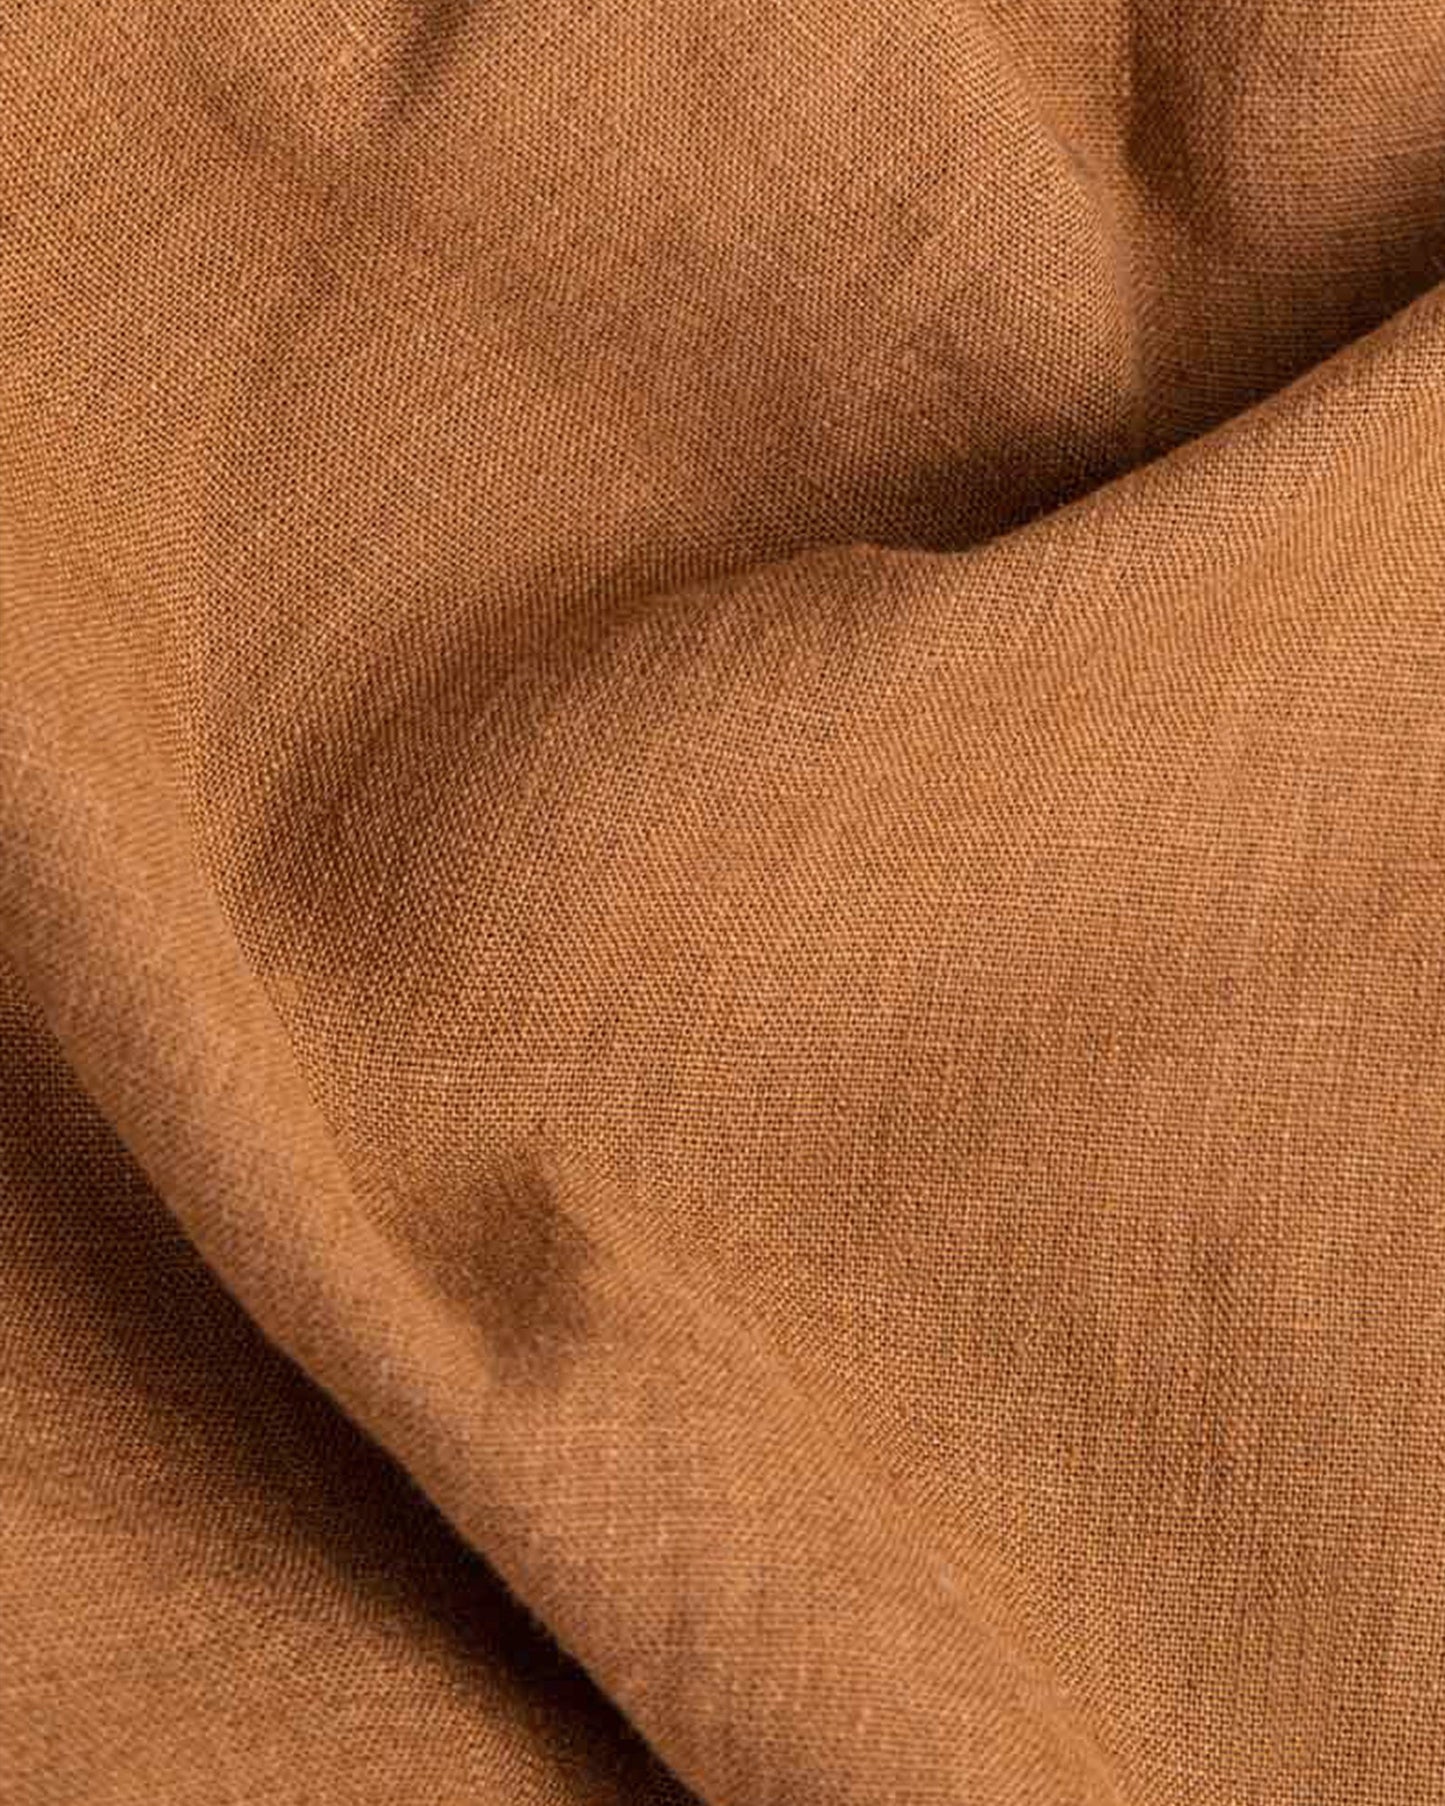 Cinnamon linen fitted sheet - MagicLinen